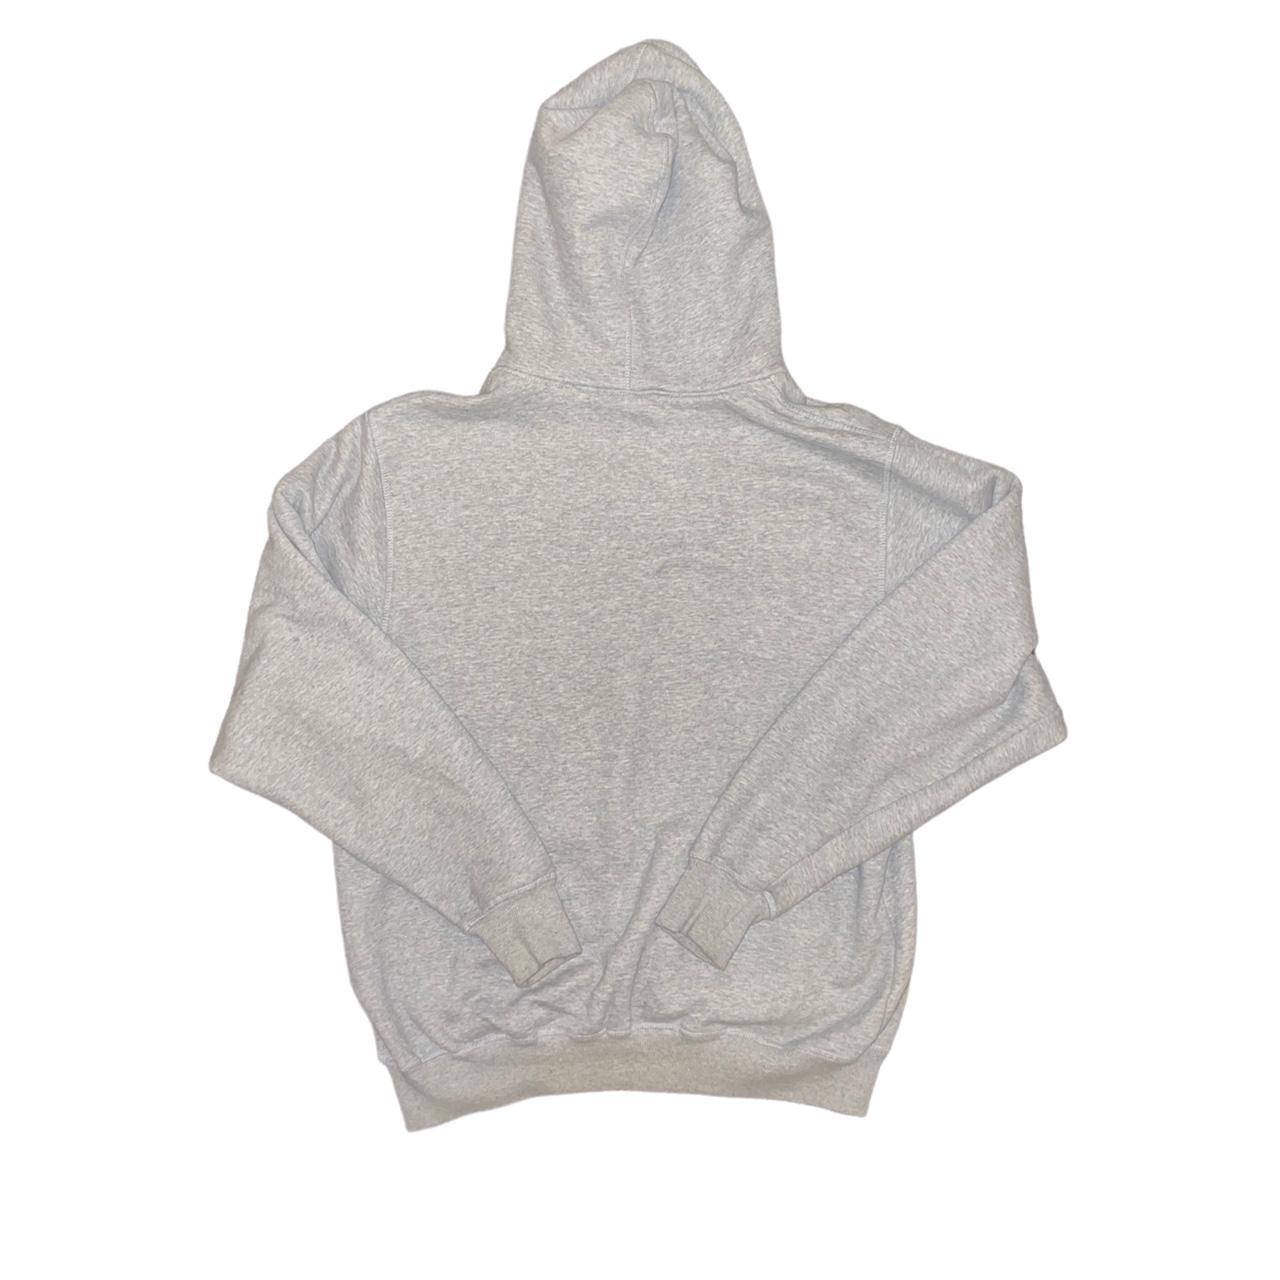 DEADSTOCK grey corteiz hoodie with printed Alcatraz... - Depop